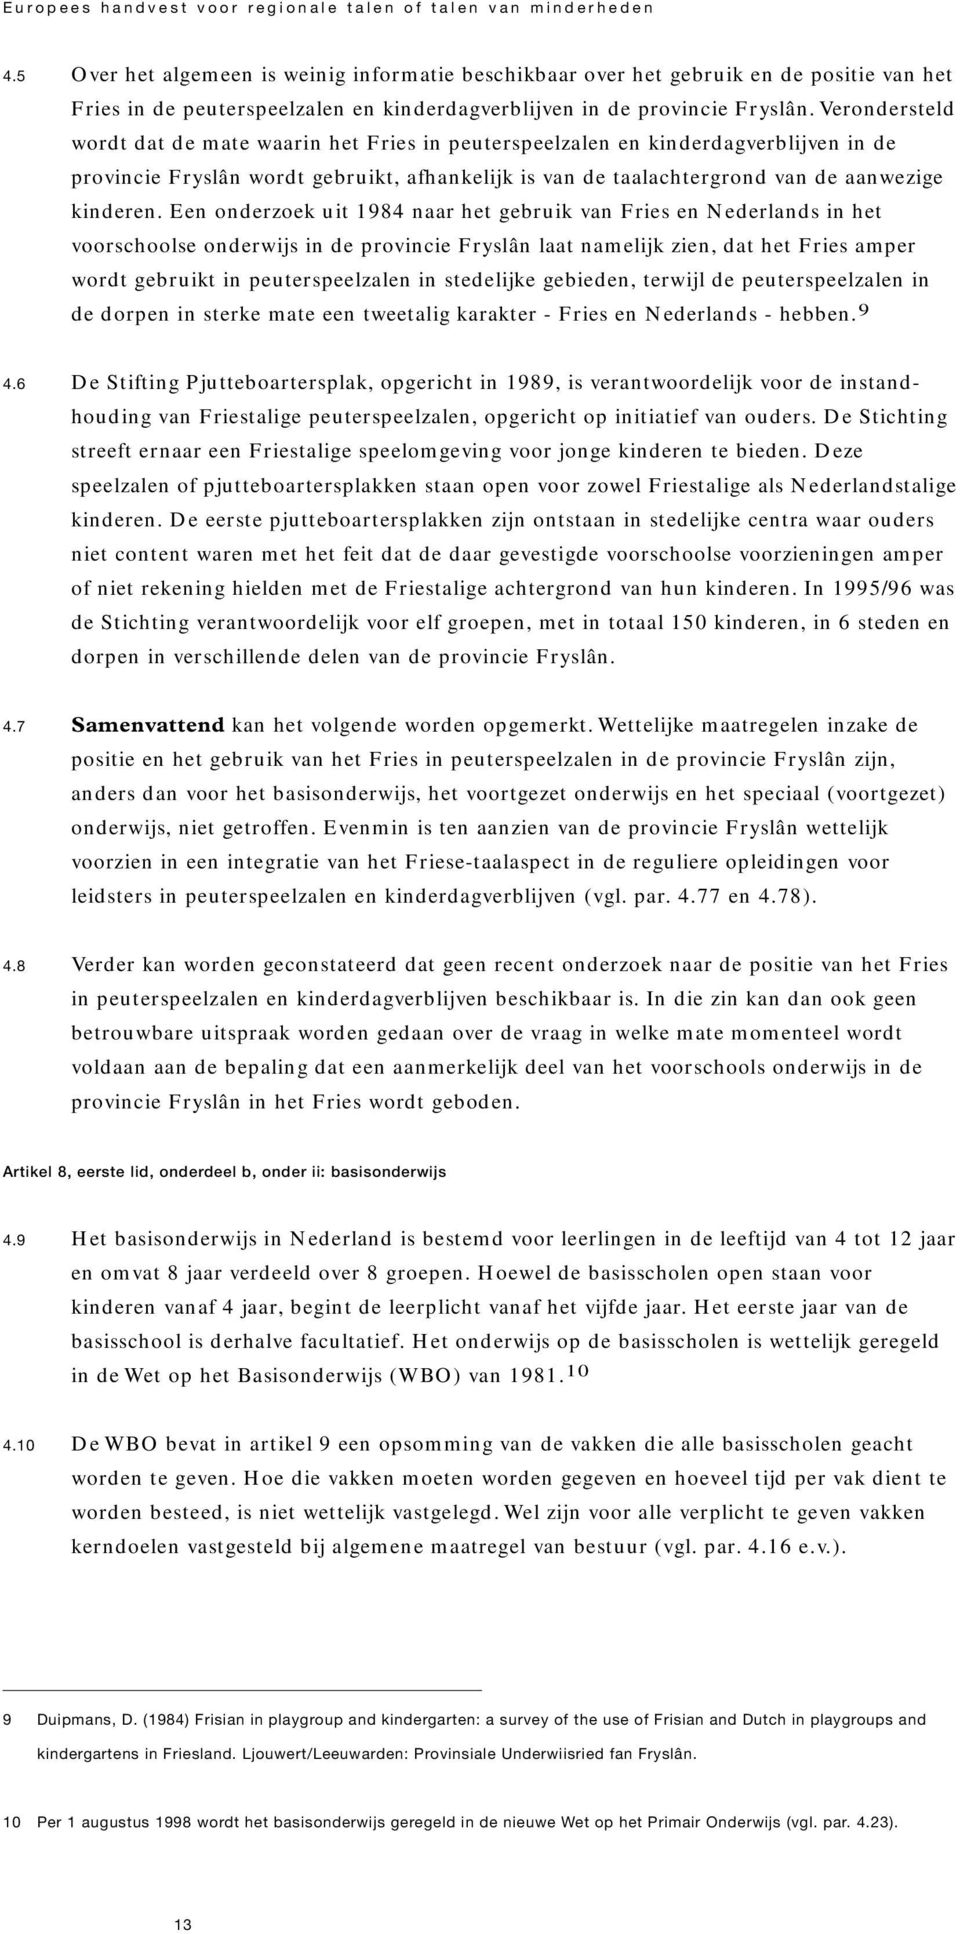 Een onderzoek uit 1984 naar het gebruik van Fries en Nederlands in het voorschoolse onderwijs in de provincie Fryslân laat namelijk zien, dat het Fries amper wordt gebruikt in peuterspeelzalen in